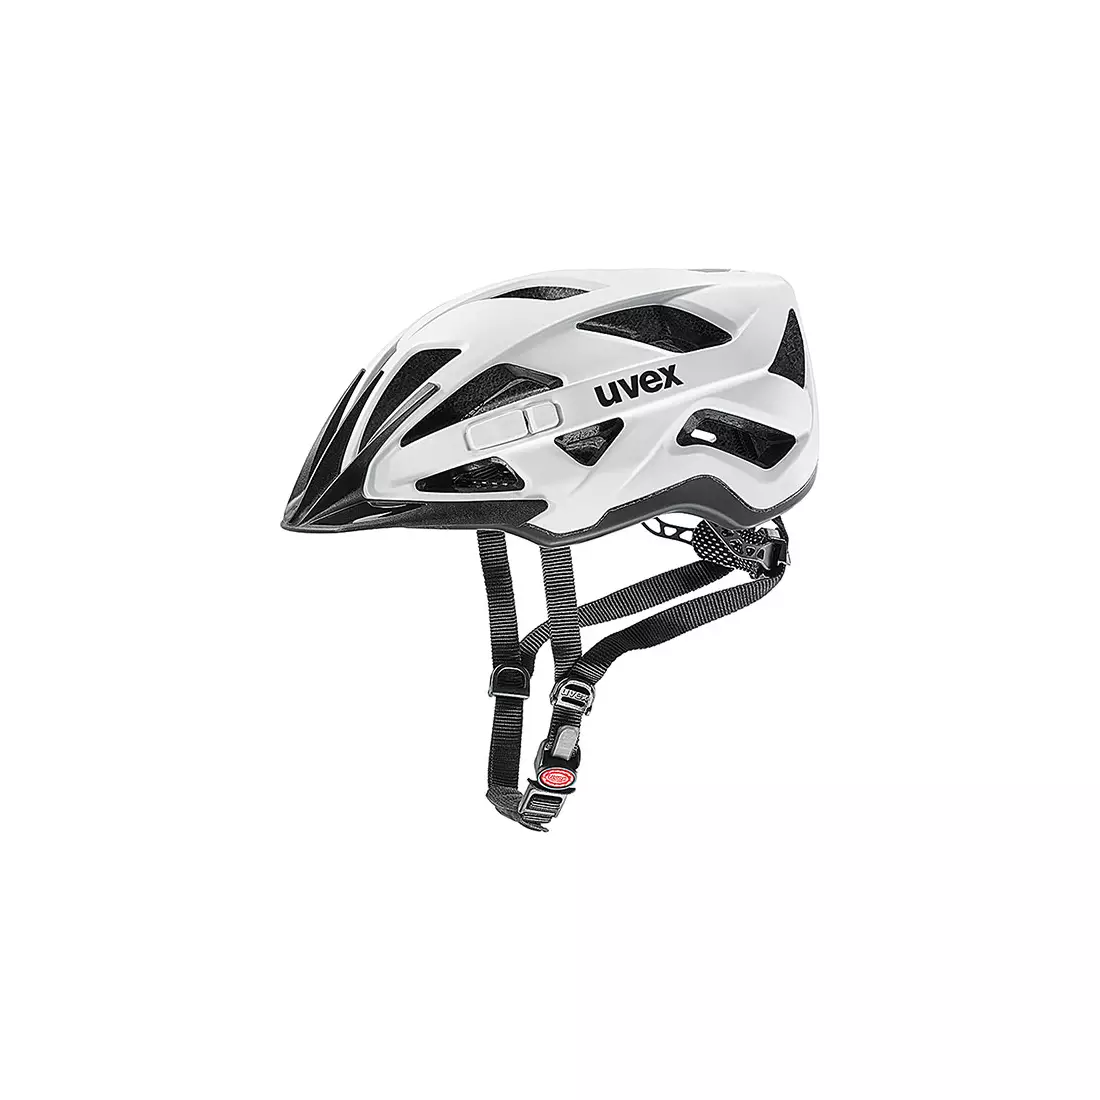 UVEX Active CC bicycle helmet, matt white